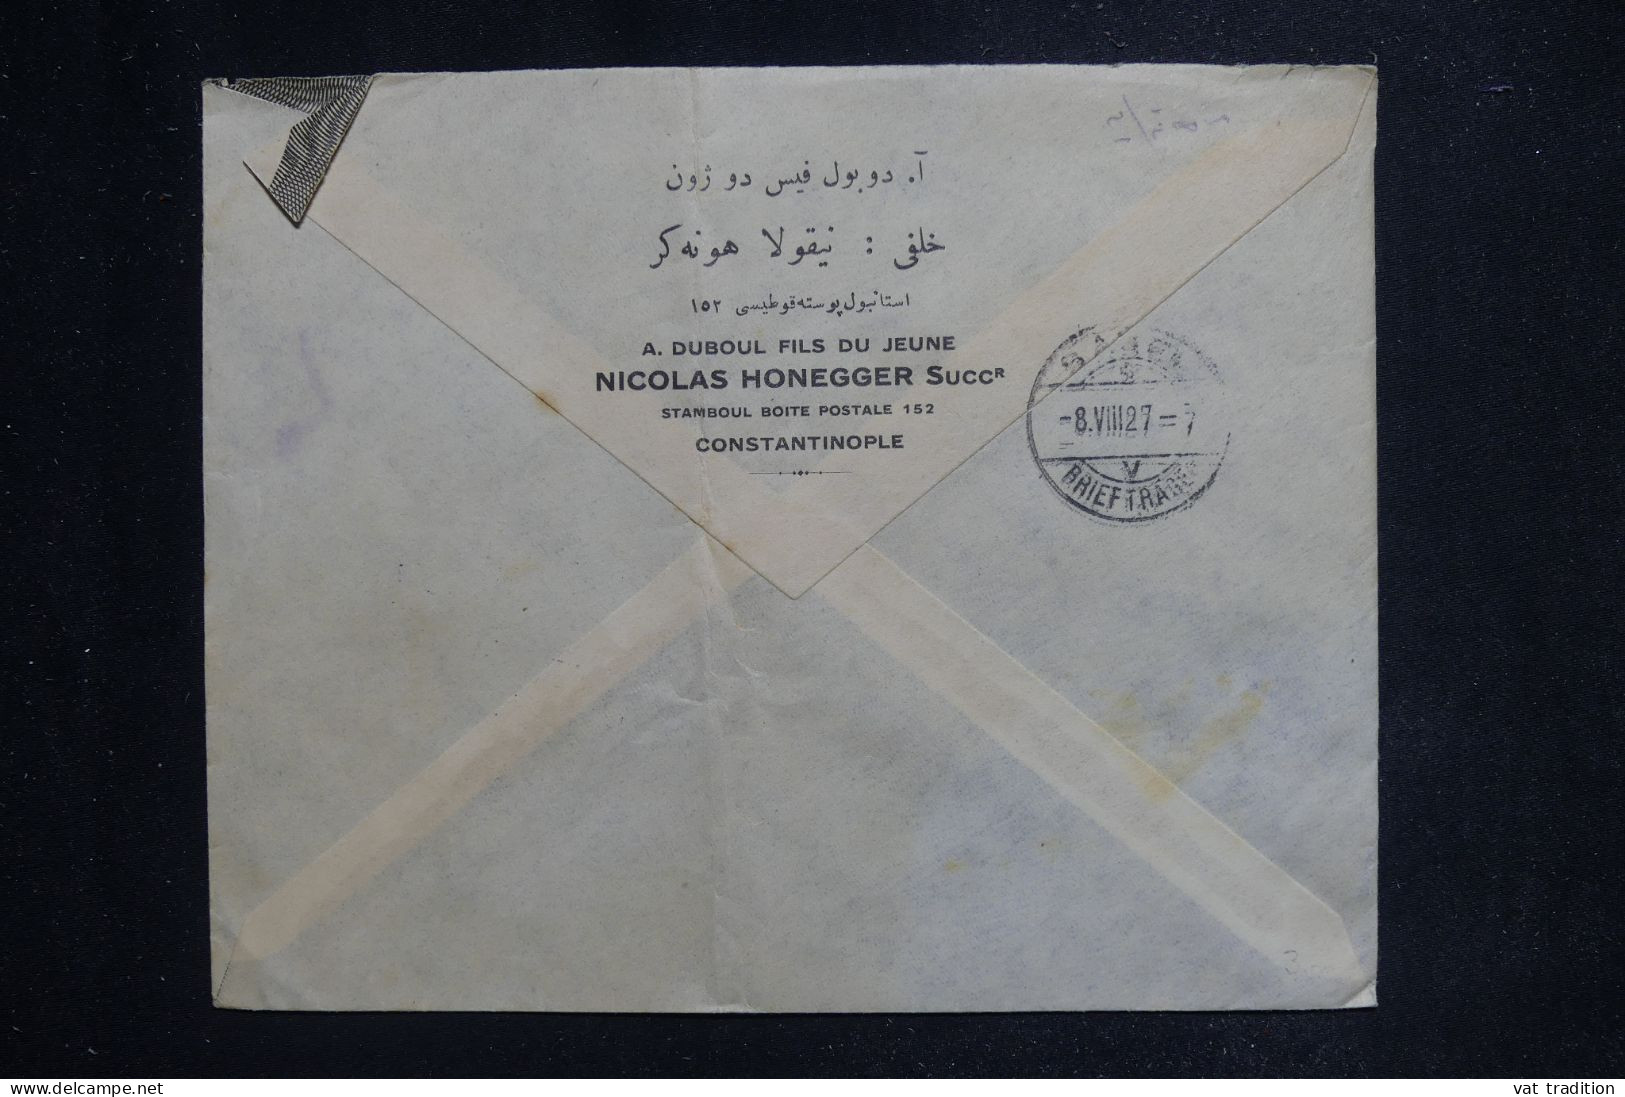 TURQUIE - Enveloppe  Commerciale En Recommandé De Istanbul Pour La Suisse En 1927 - L 144320 - Lettres & Documents